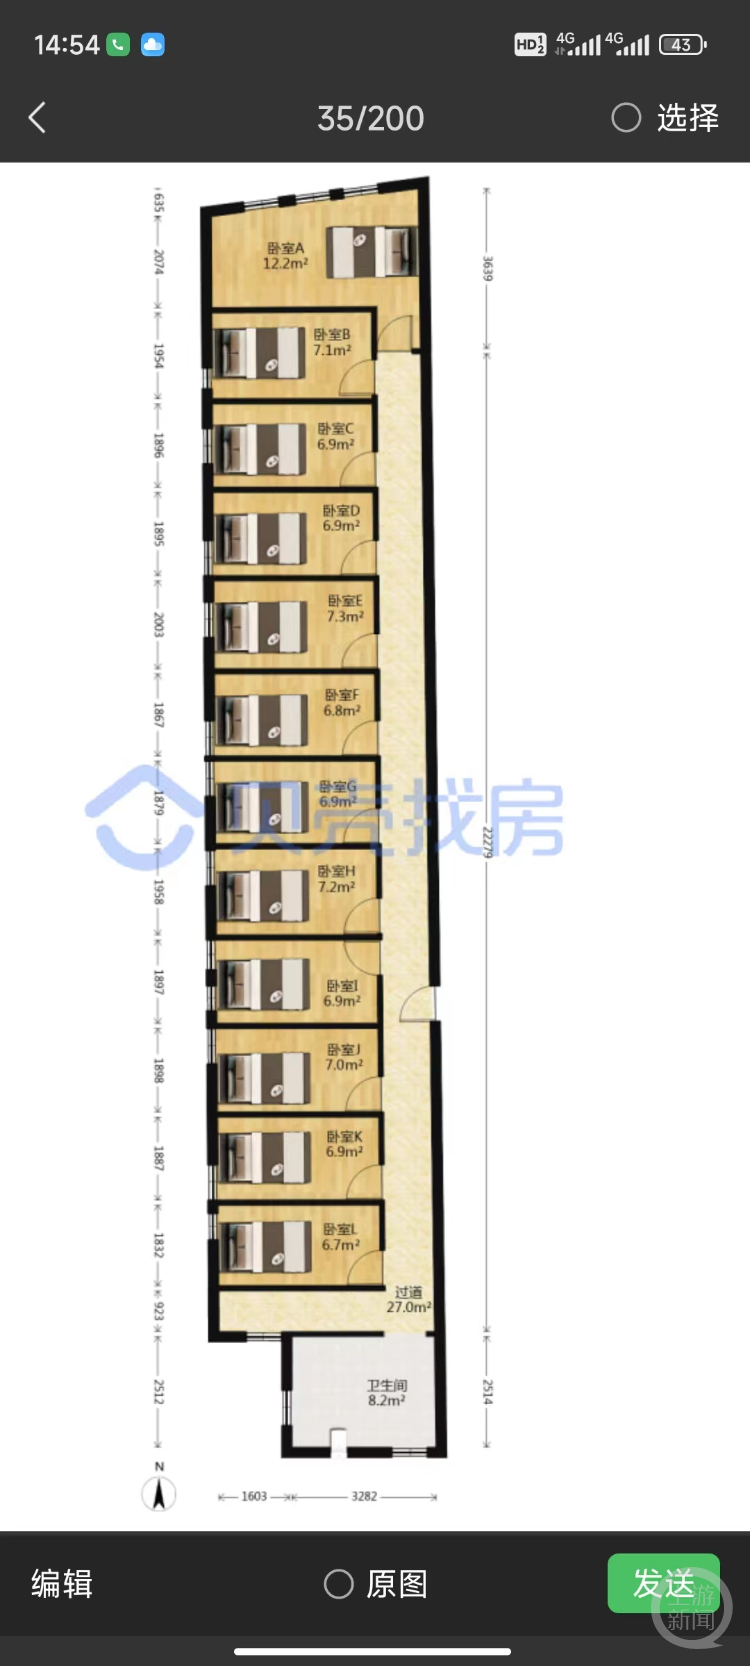 广州一套150平方米“砍刀房”隔出12房12床以350万出售，住建局称涉嫌违建